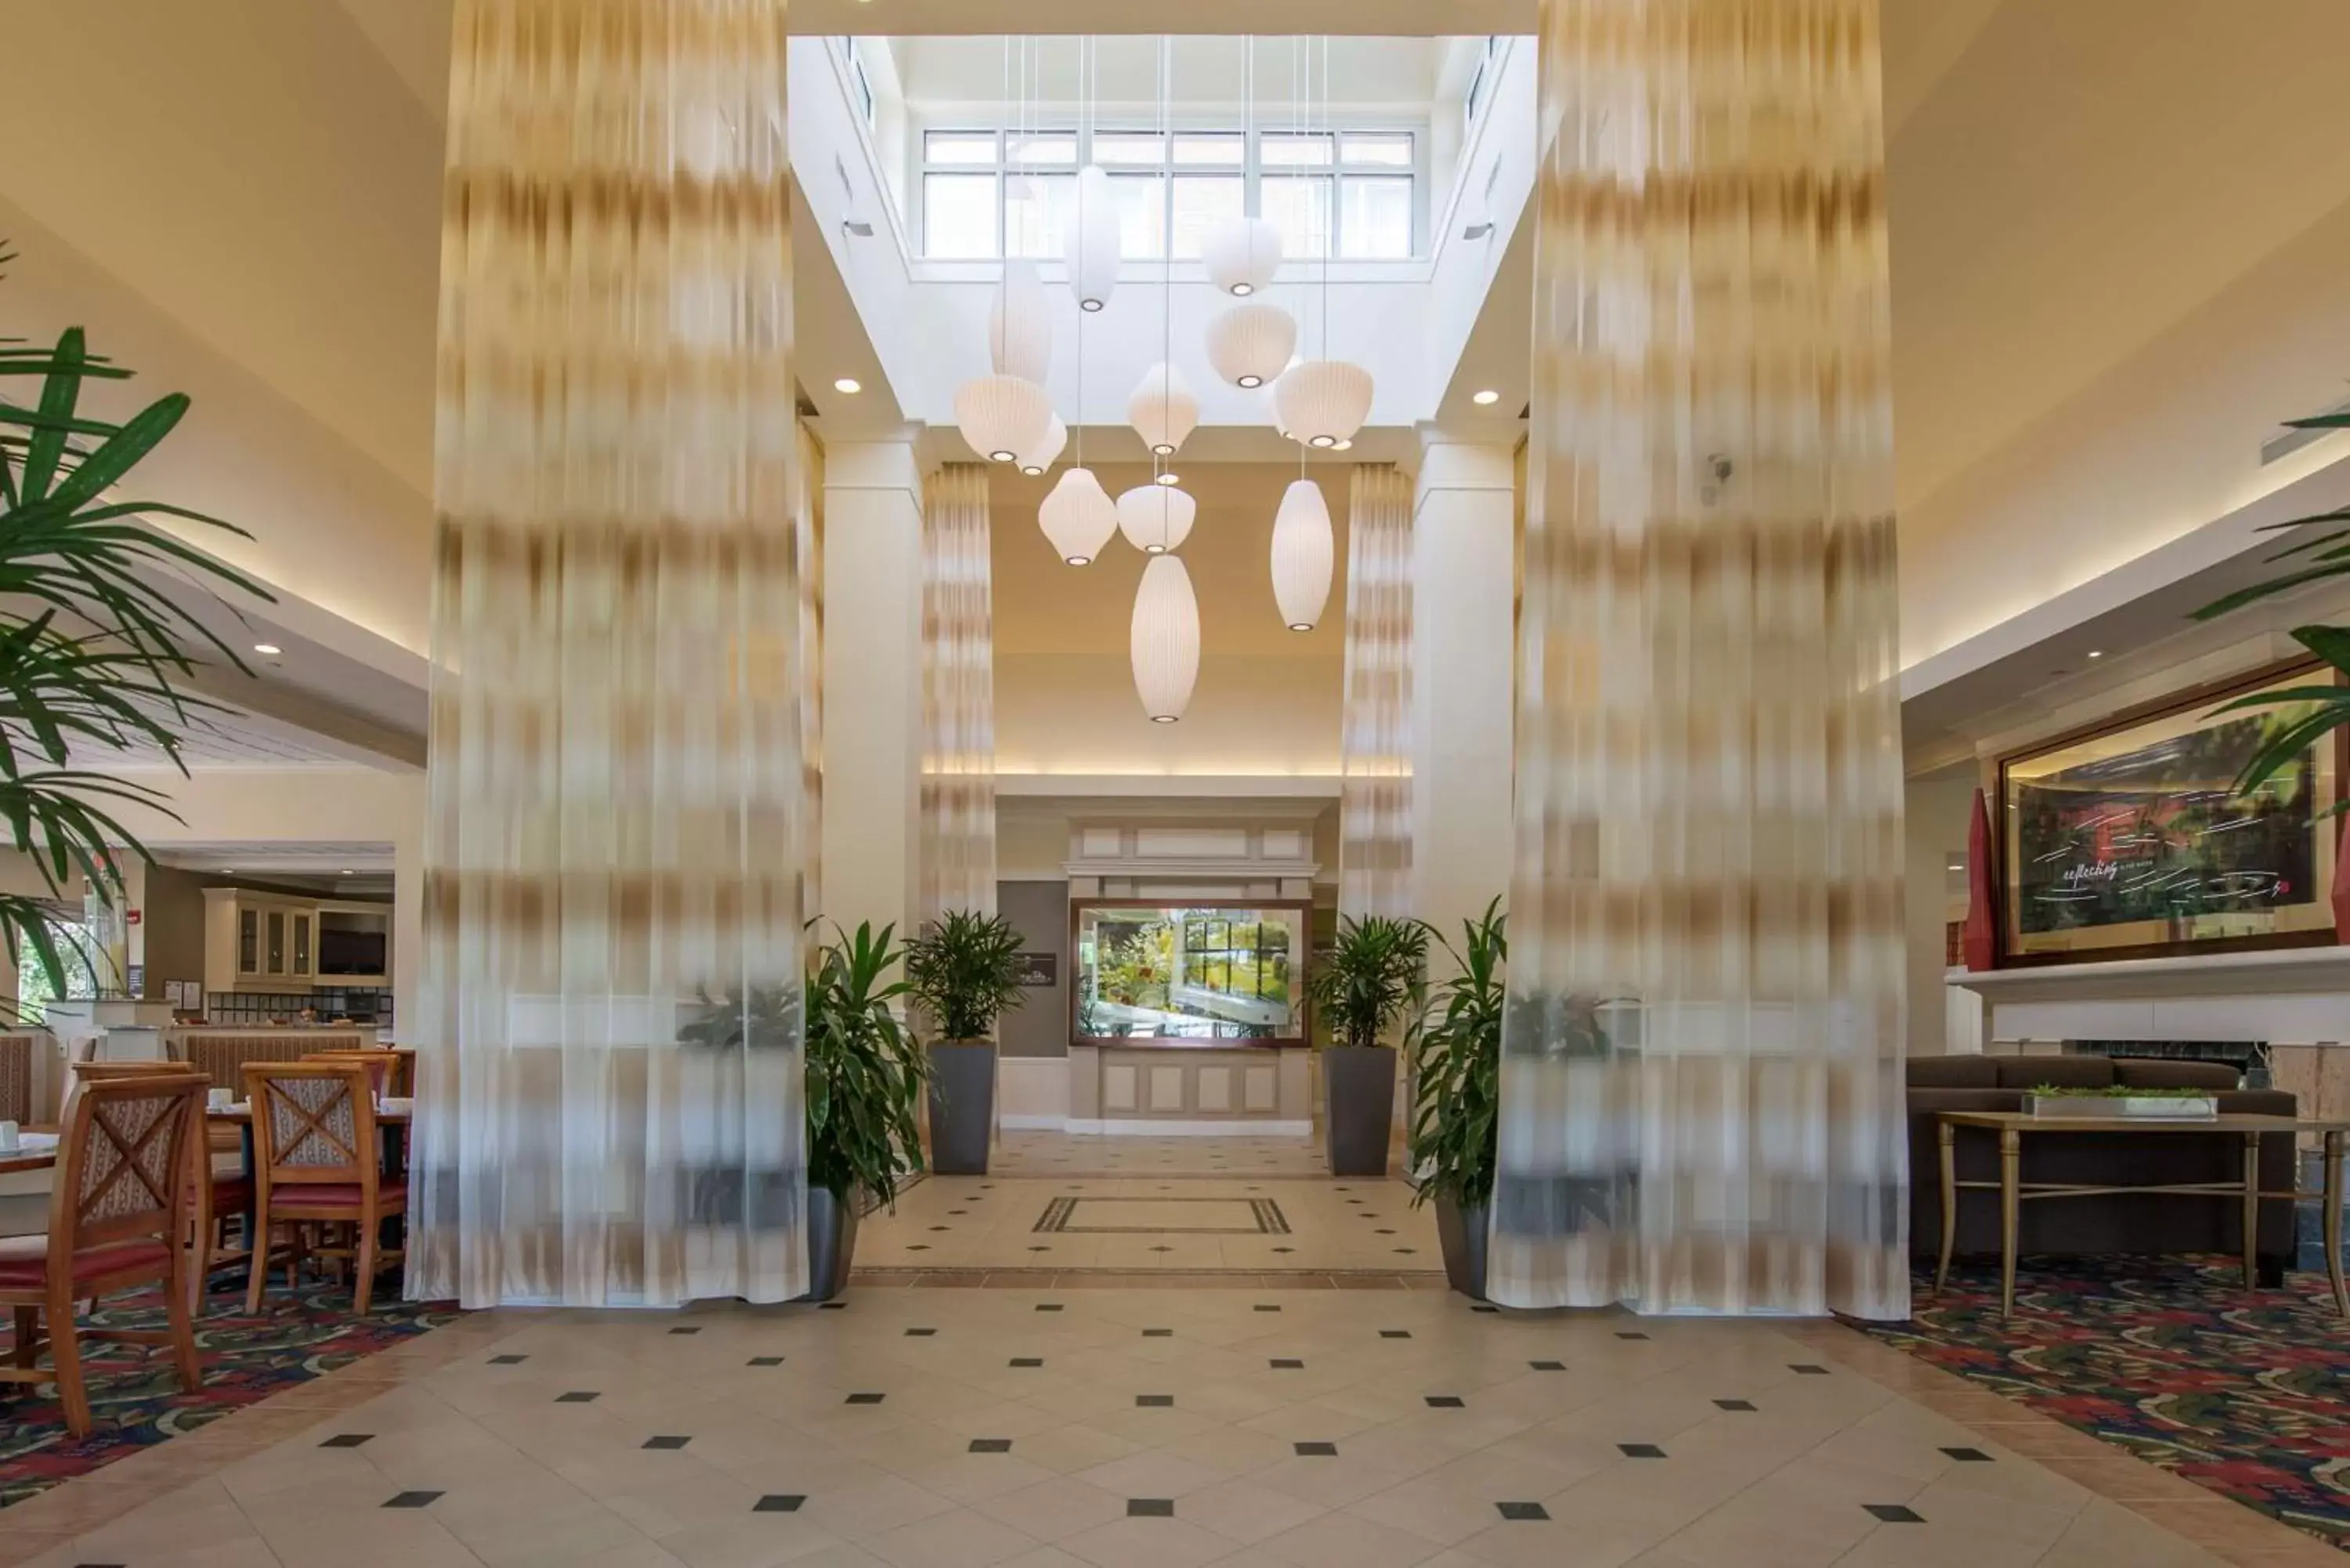 Lobby or reception, Lobby/Reception in Hilton Garden Inn Jackson-Madison